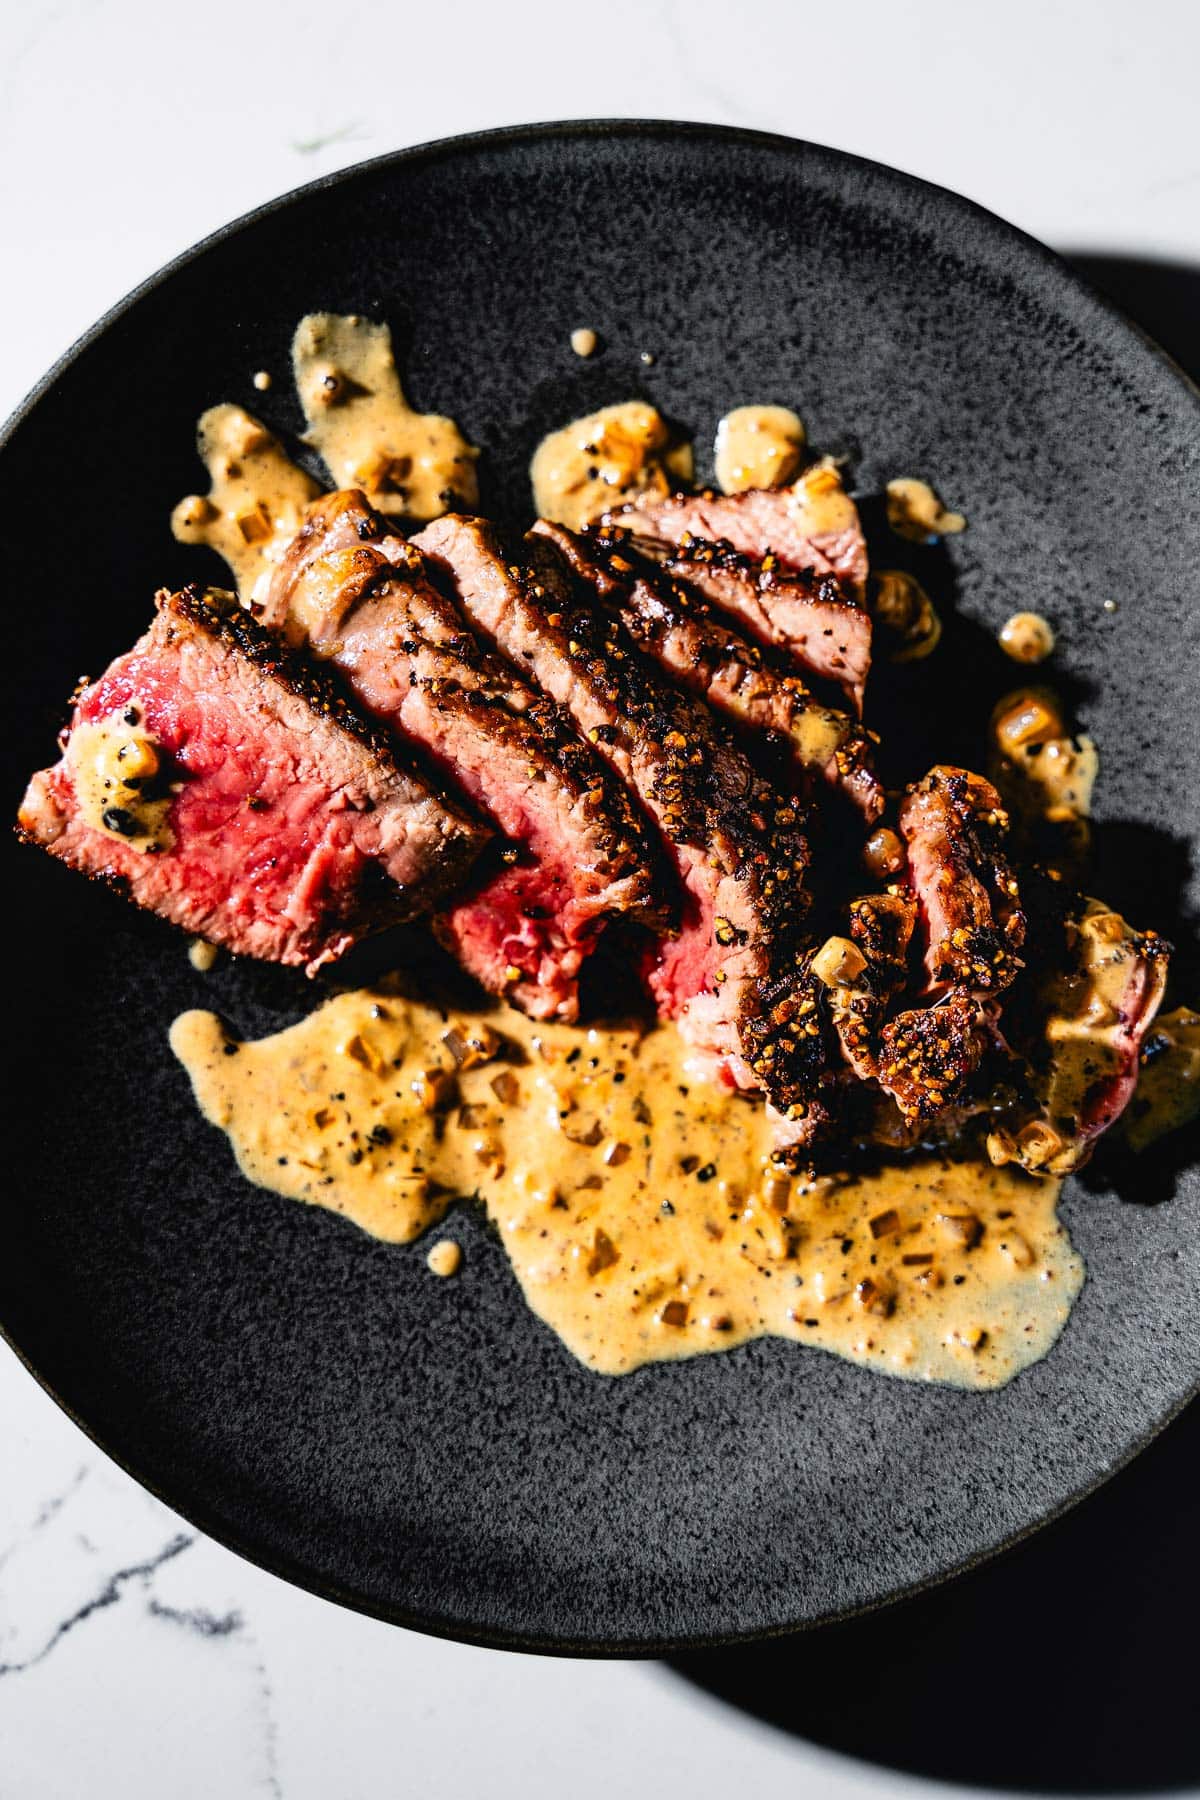 steak au poivre overhead on plate